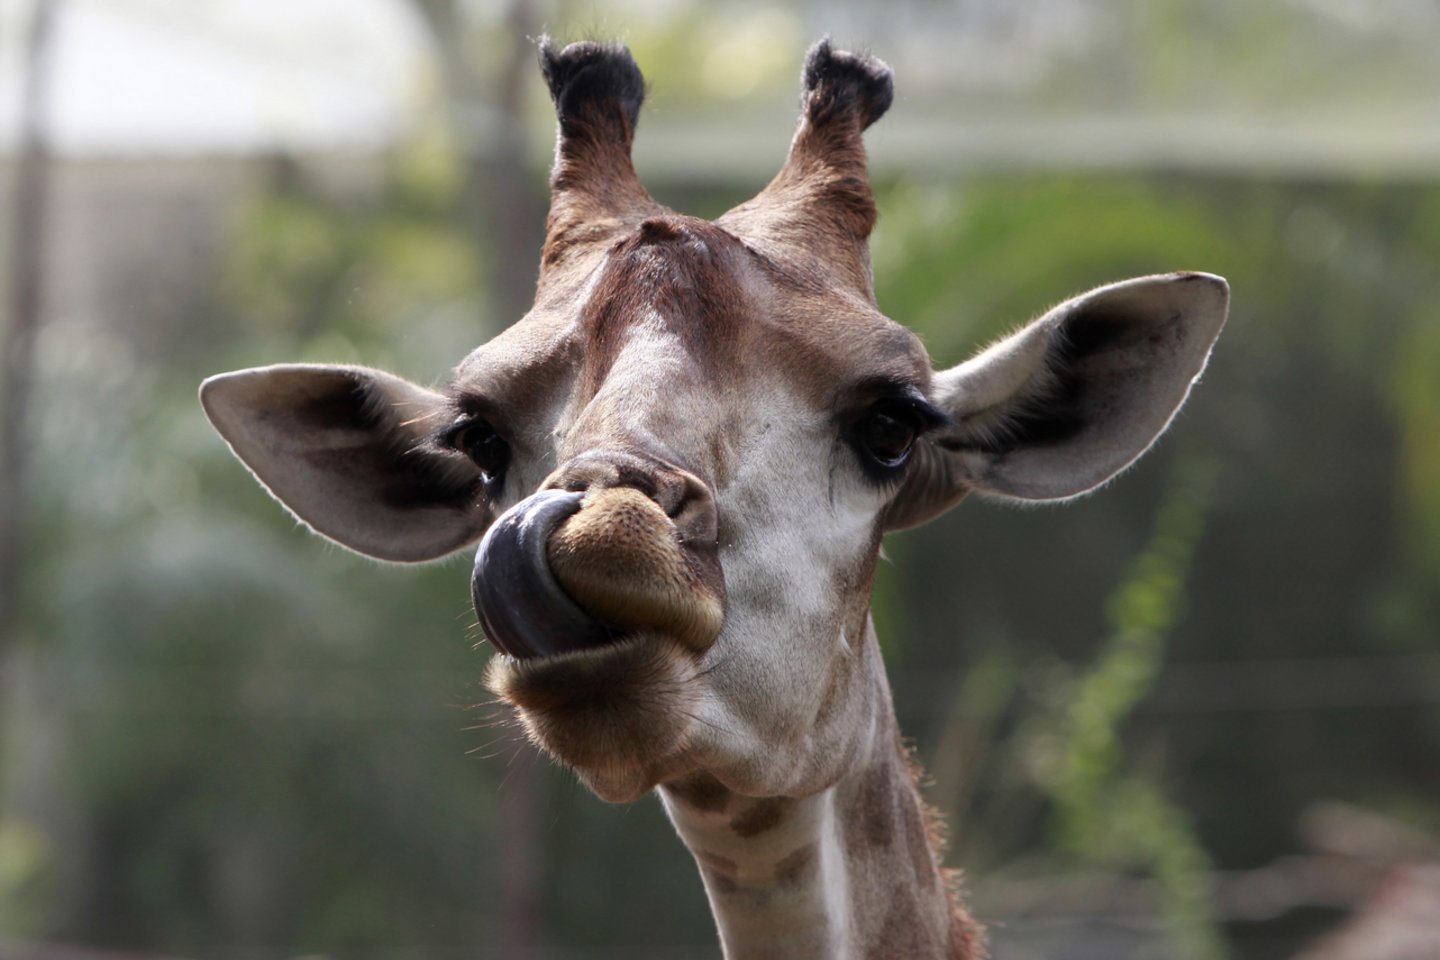  Ant žirafos liežuvio yra tamsaus pigmento melanino. Kam šio pigmento reikia Afrikos gyvūnui – iki galo neaišku.<br> Scanpix nuotr.